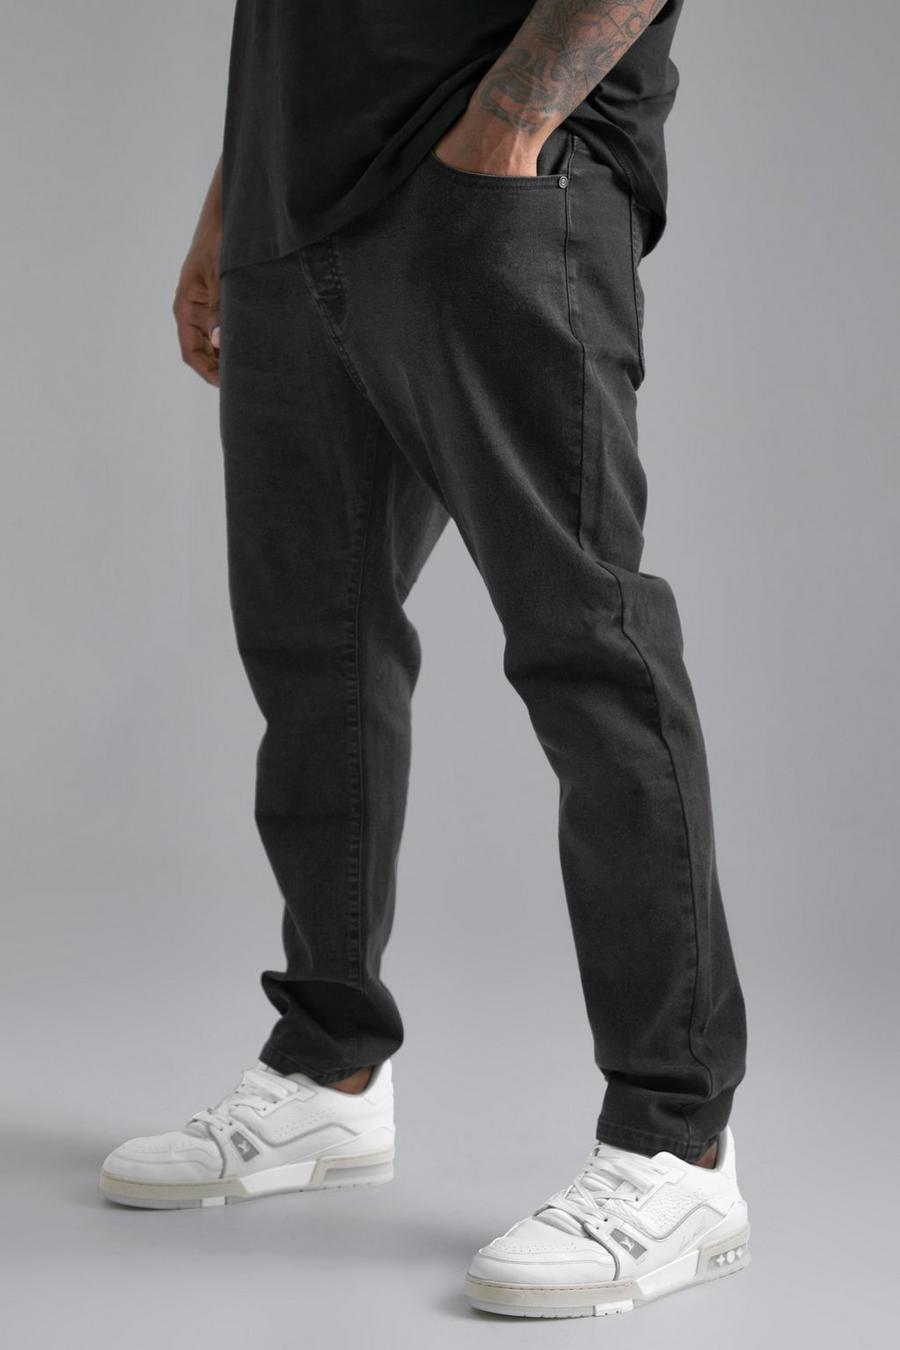 שחור דהוי ג'ינס סקיני נמתח, מידות גדולות